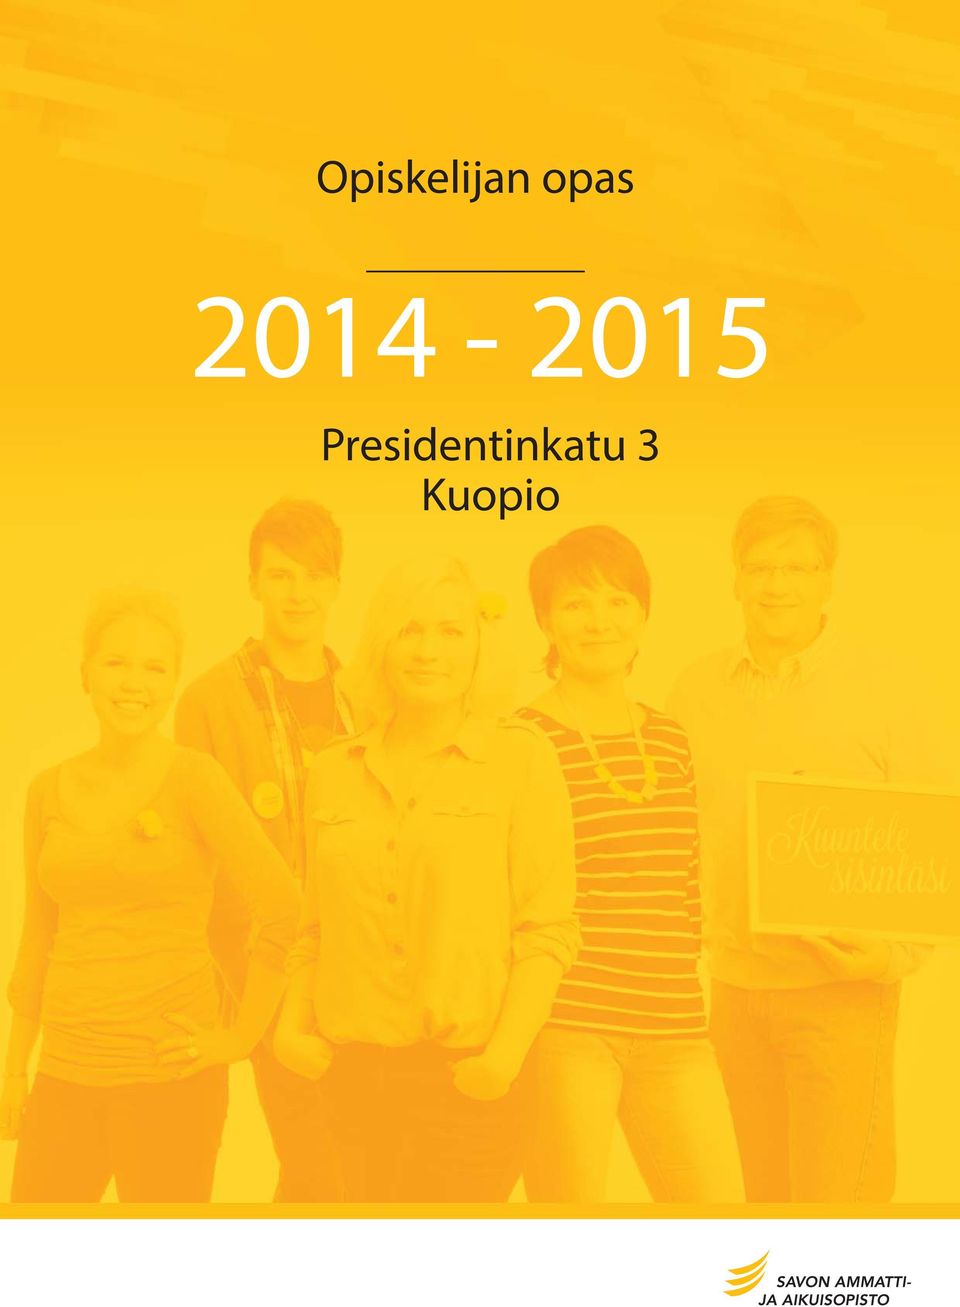 Opiskelijan opas Presidentinkatu 3 Kuopio - PDF Ilmainen lataus